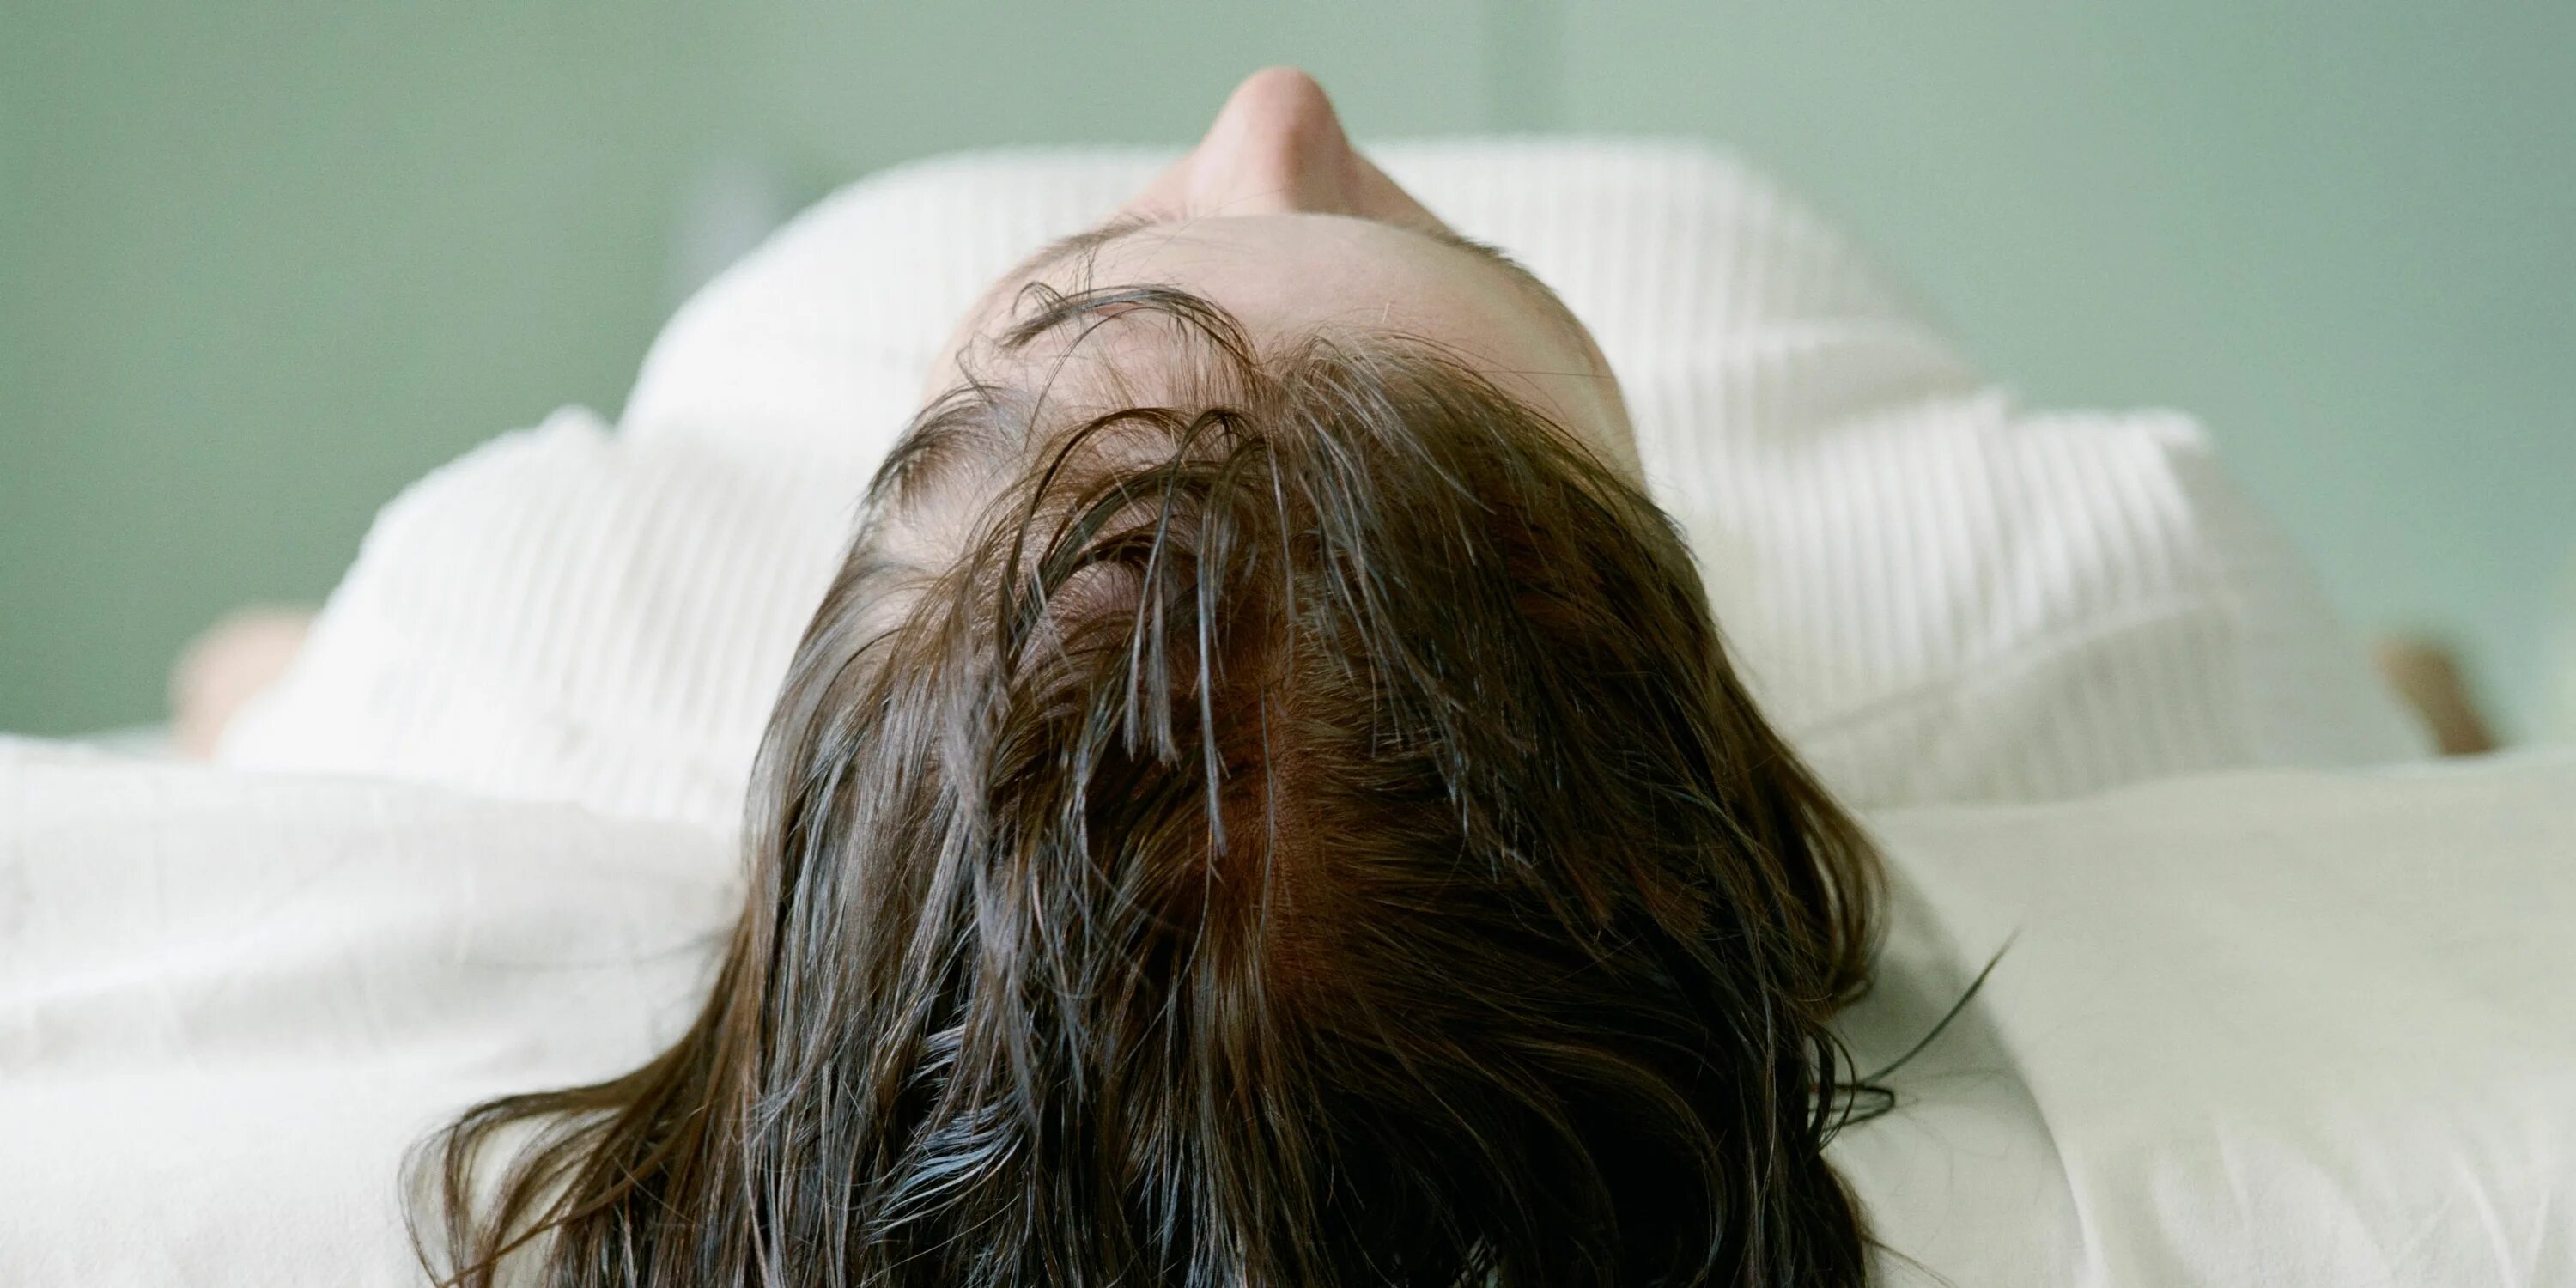 Sleeping hairy. Волосы на подушке. Сальные волосы. Длинные волосы во сне. Длинные волосы на подушке.